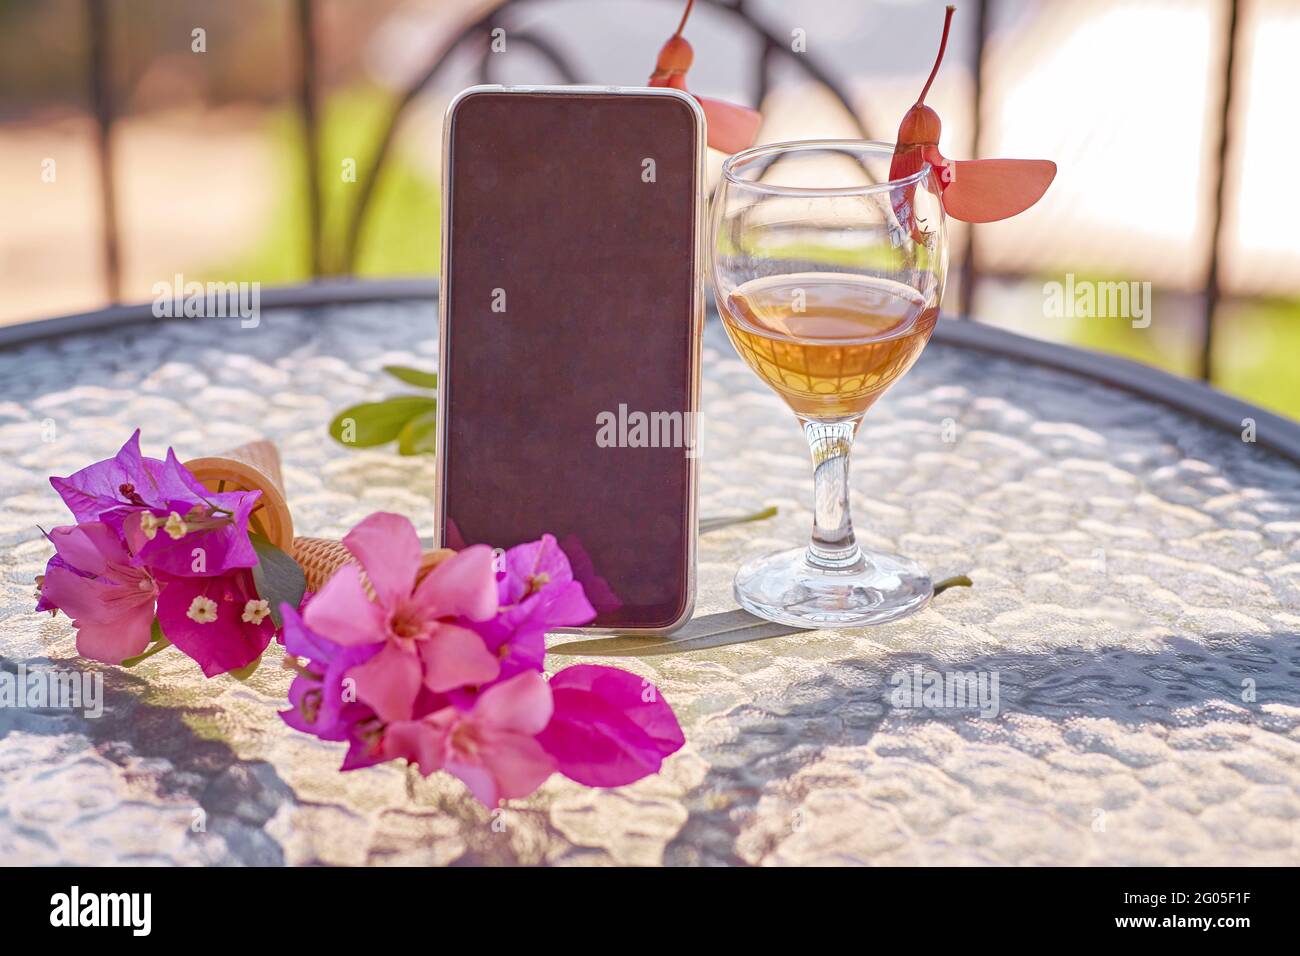 Modell eines mobilen Bildschirms mit einem Glas Wein, dekoriert mit frischen, hellen, surrealen Blumen im Sommer. Femininer, flacher Lay. Speicherplatz kopieren. Hochwertige Fotos Stockfoto